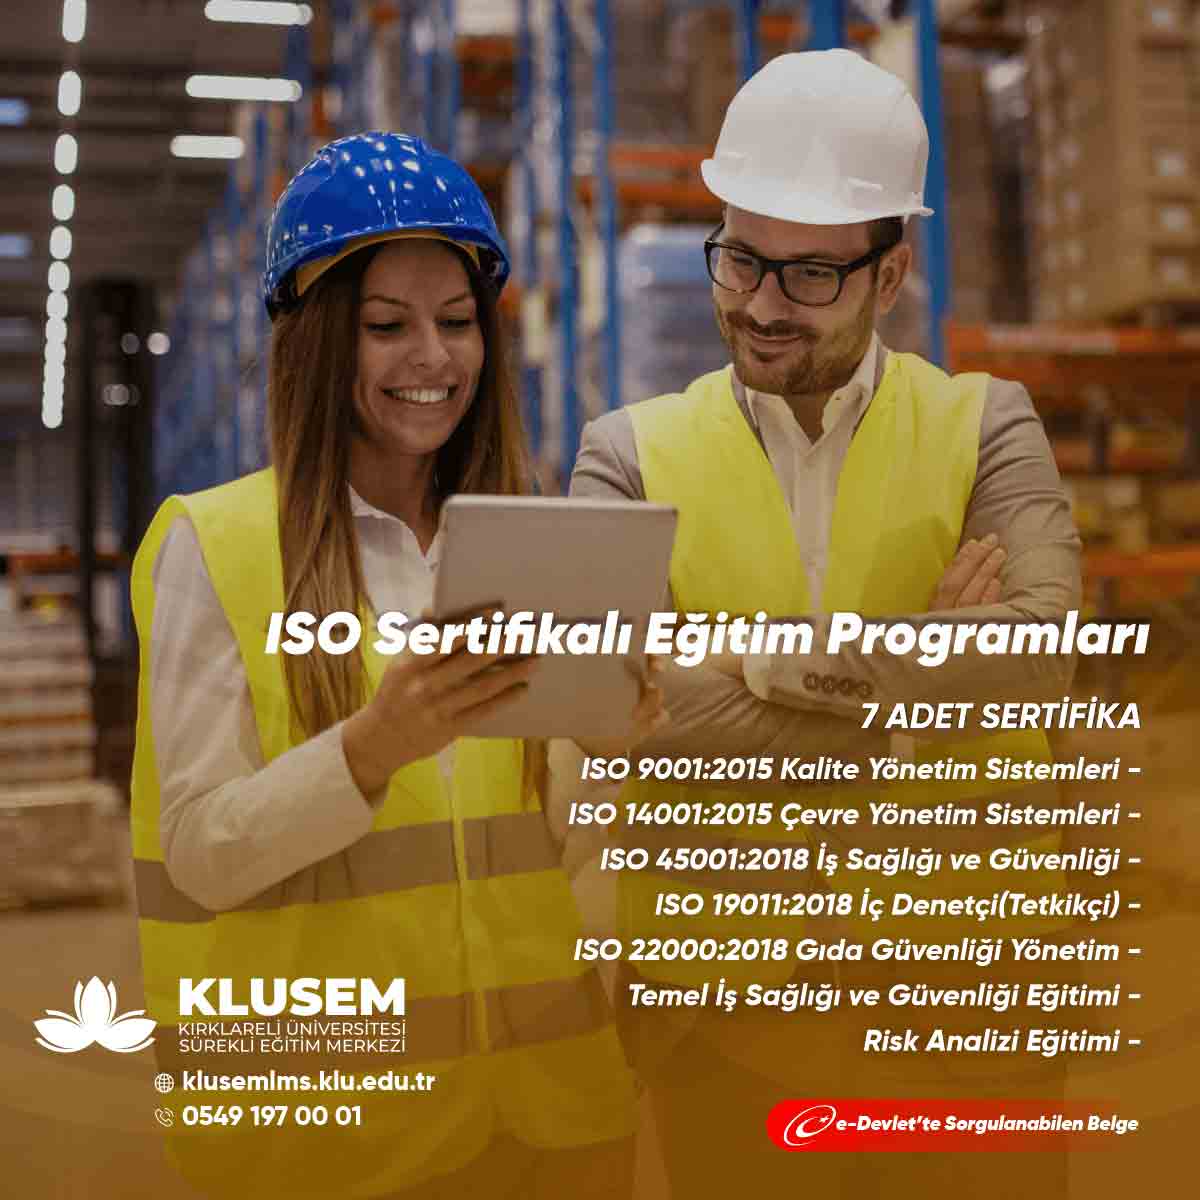 ISO Sertifikalı Eğitim Programları